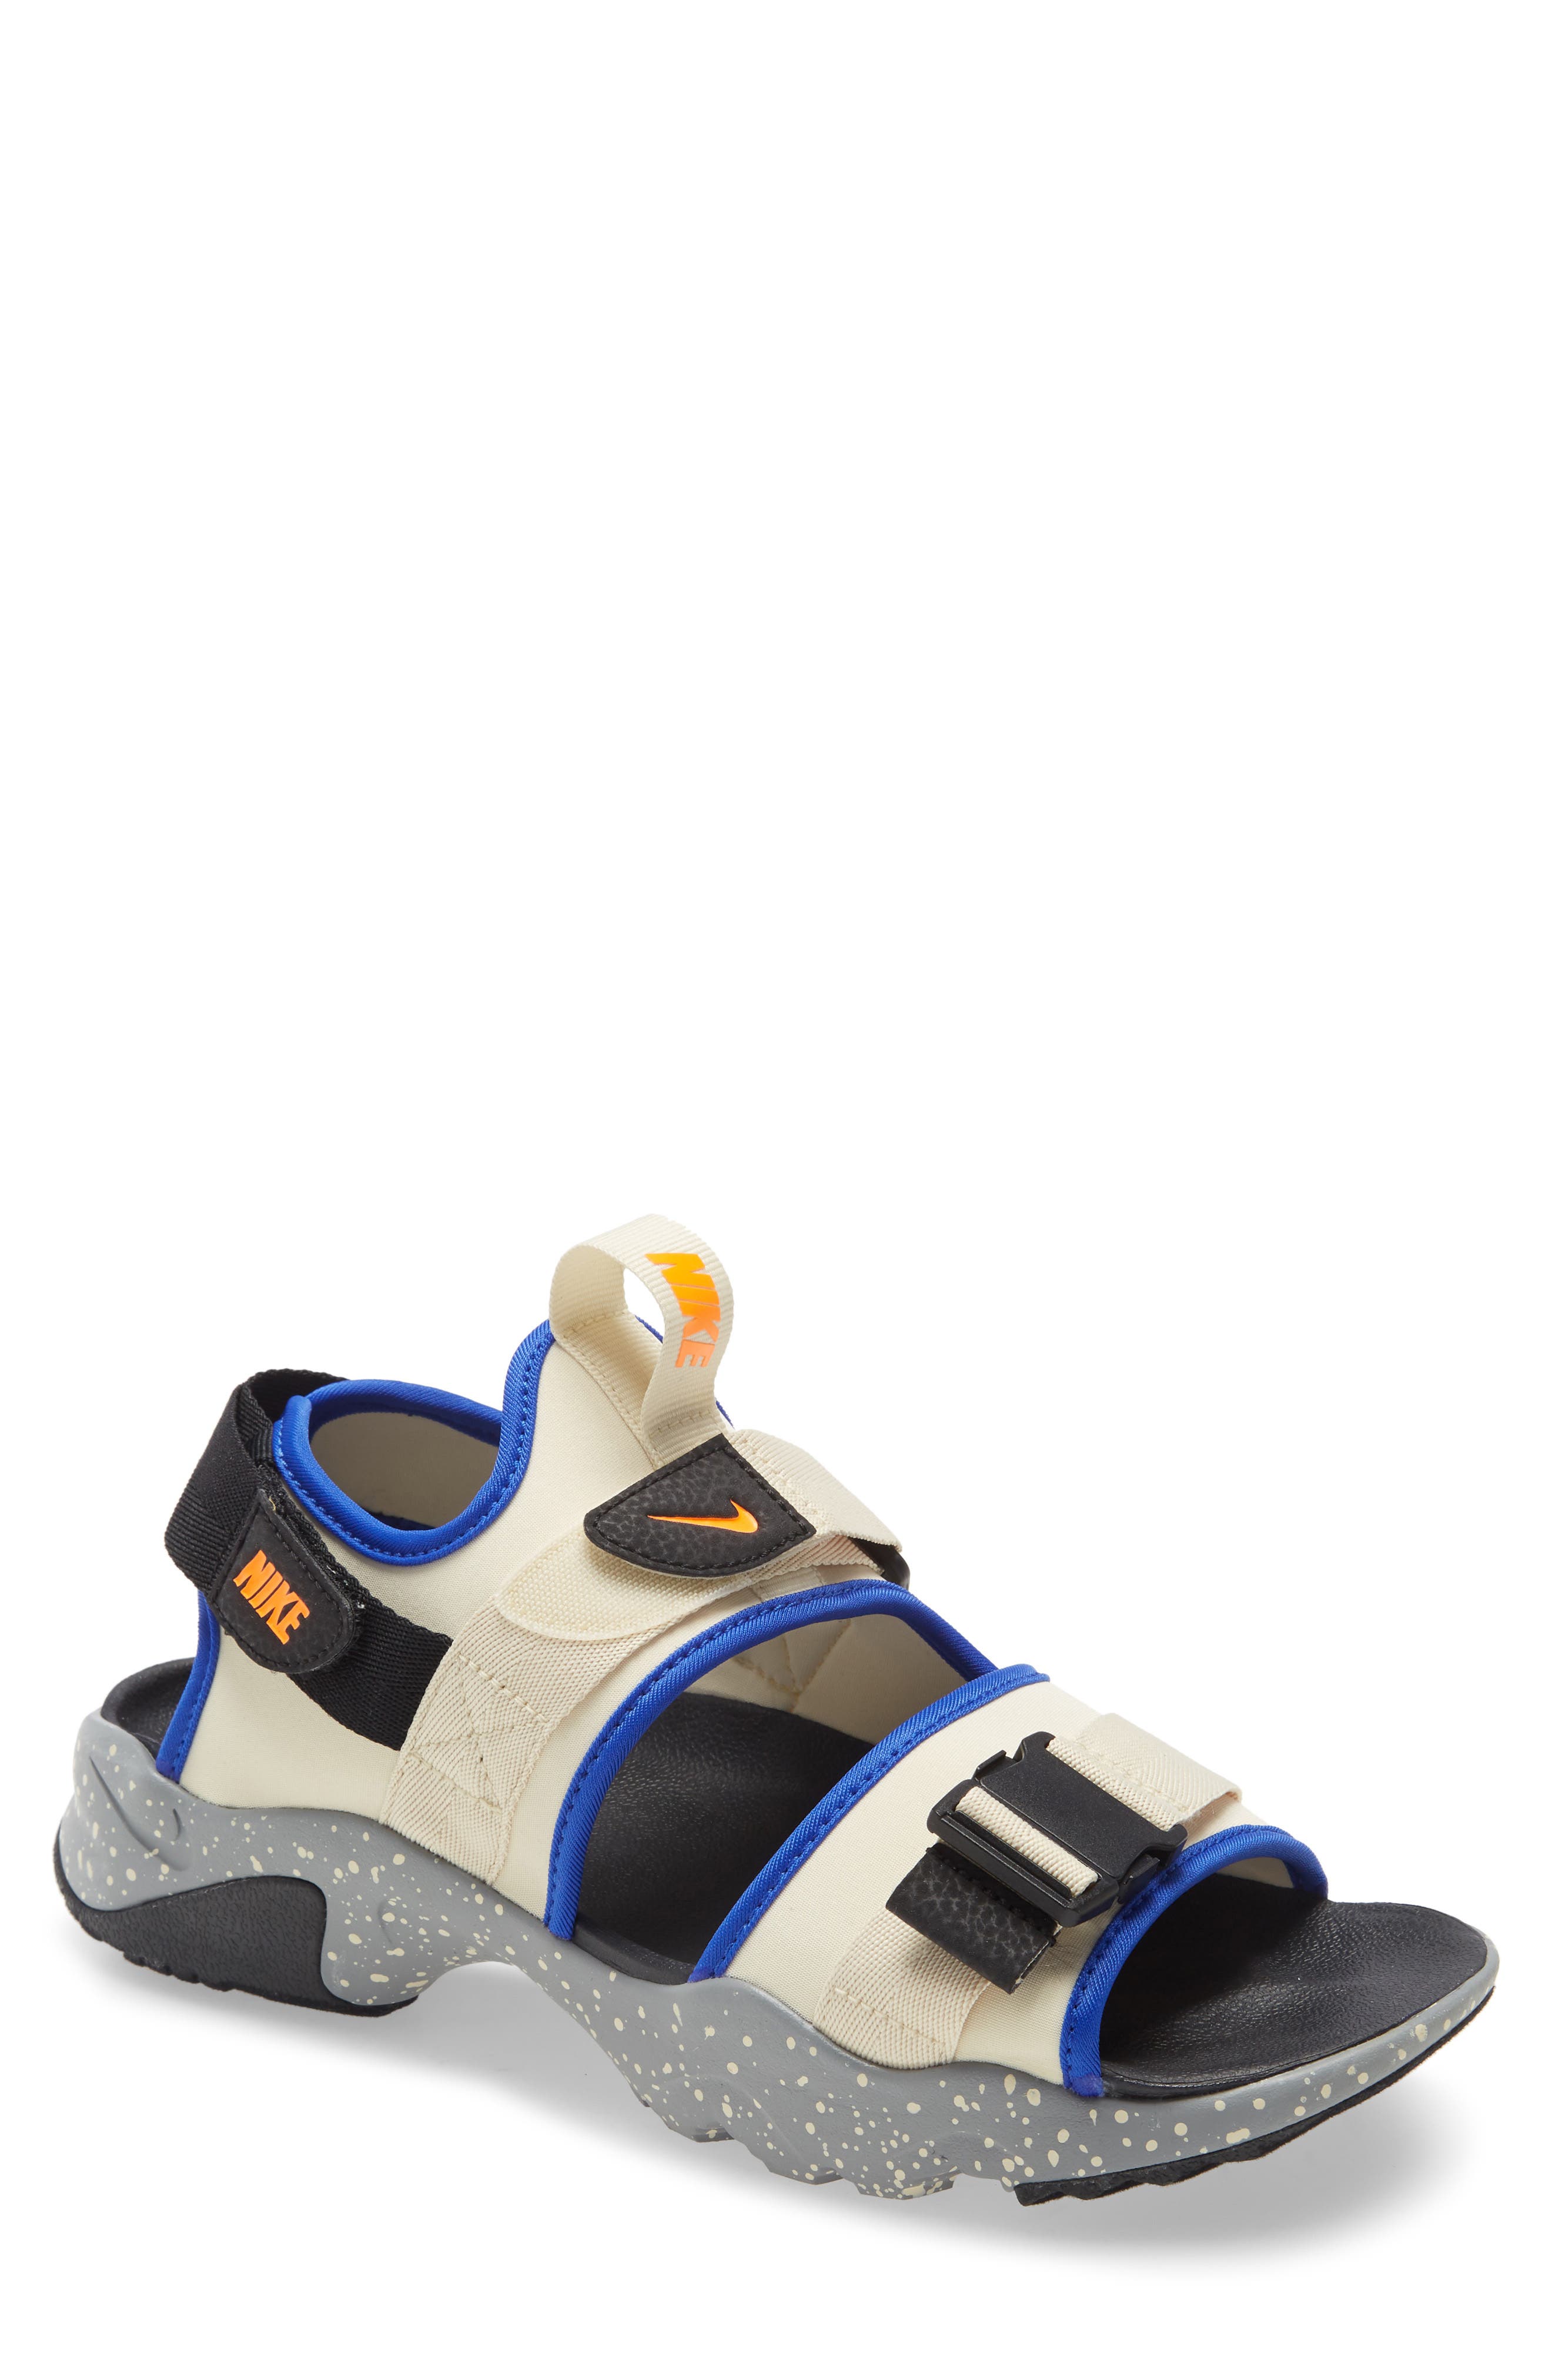 Men's Sandals Nike Shoes | Nordstrom